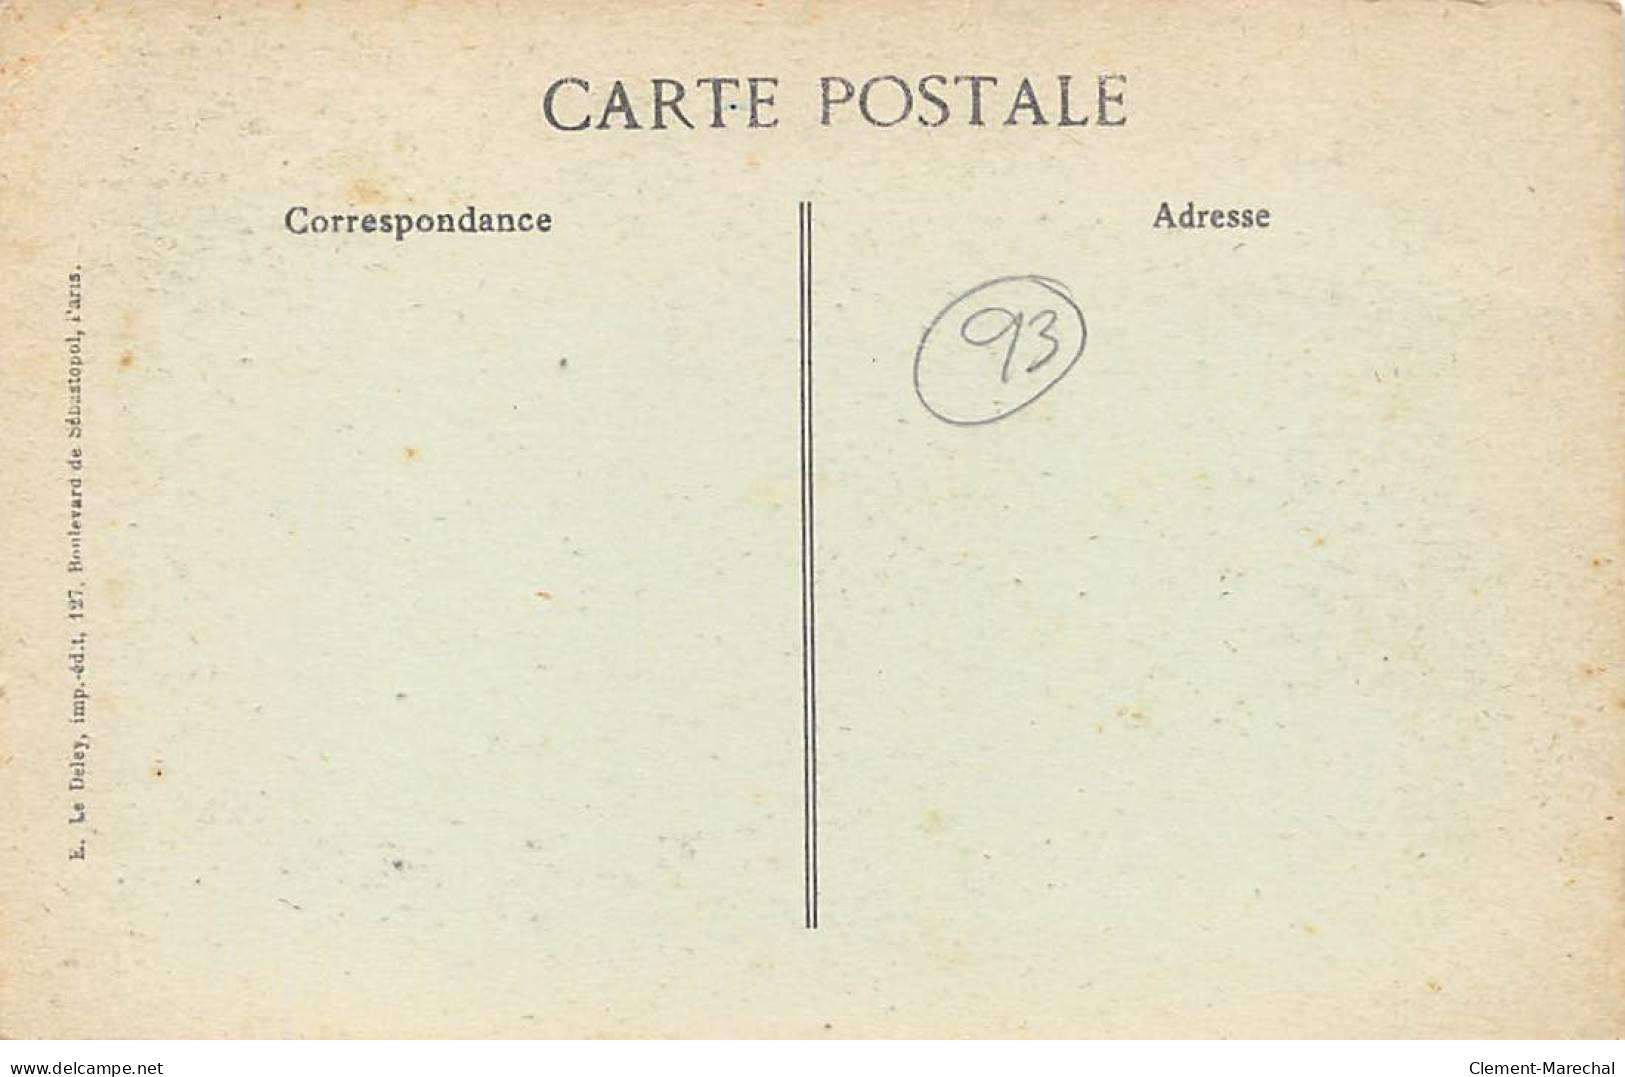 Catastrophe De LA COURNEUVE - 15 Mars 1918 - Très Bon état - La Courneuve